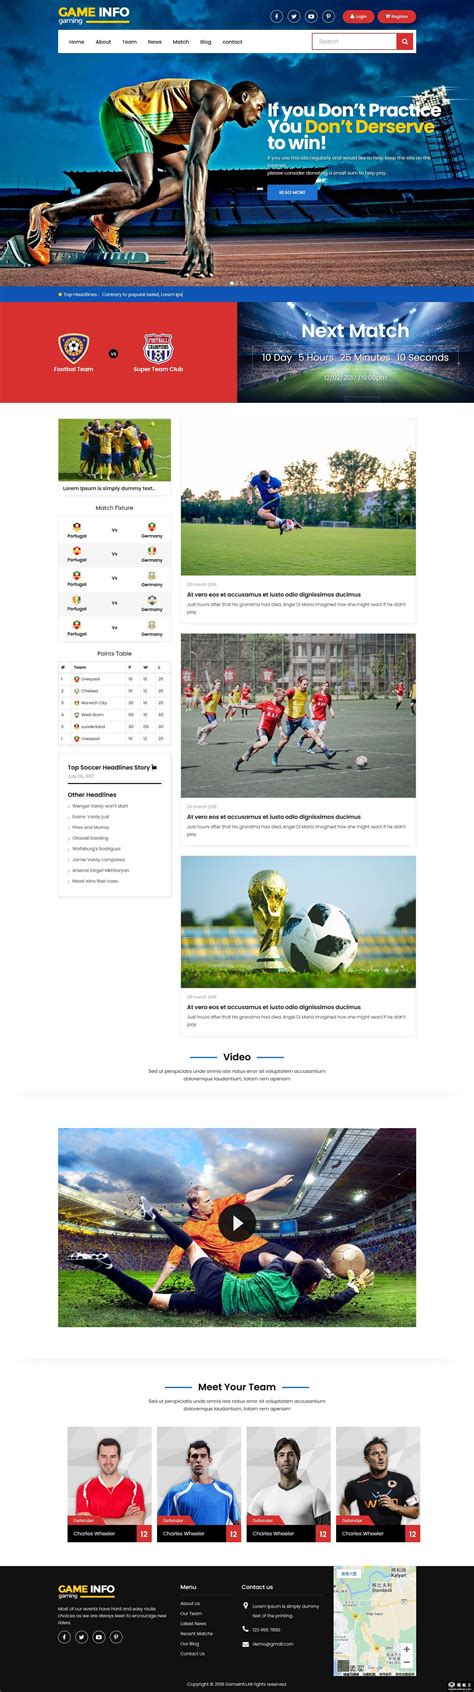 官网首页-FC足球世界手游在线官方网站-腾讯游戏